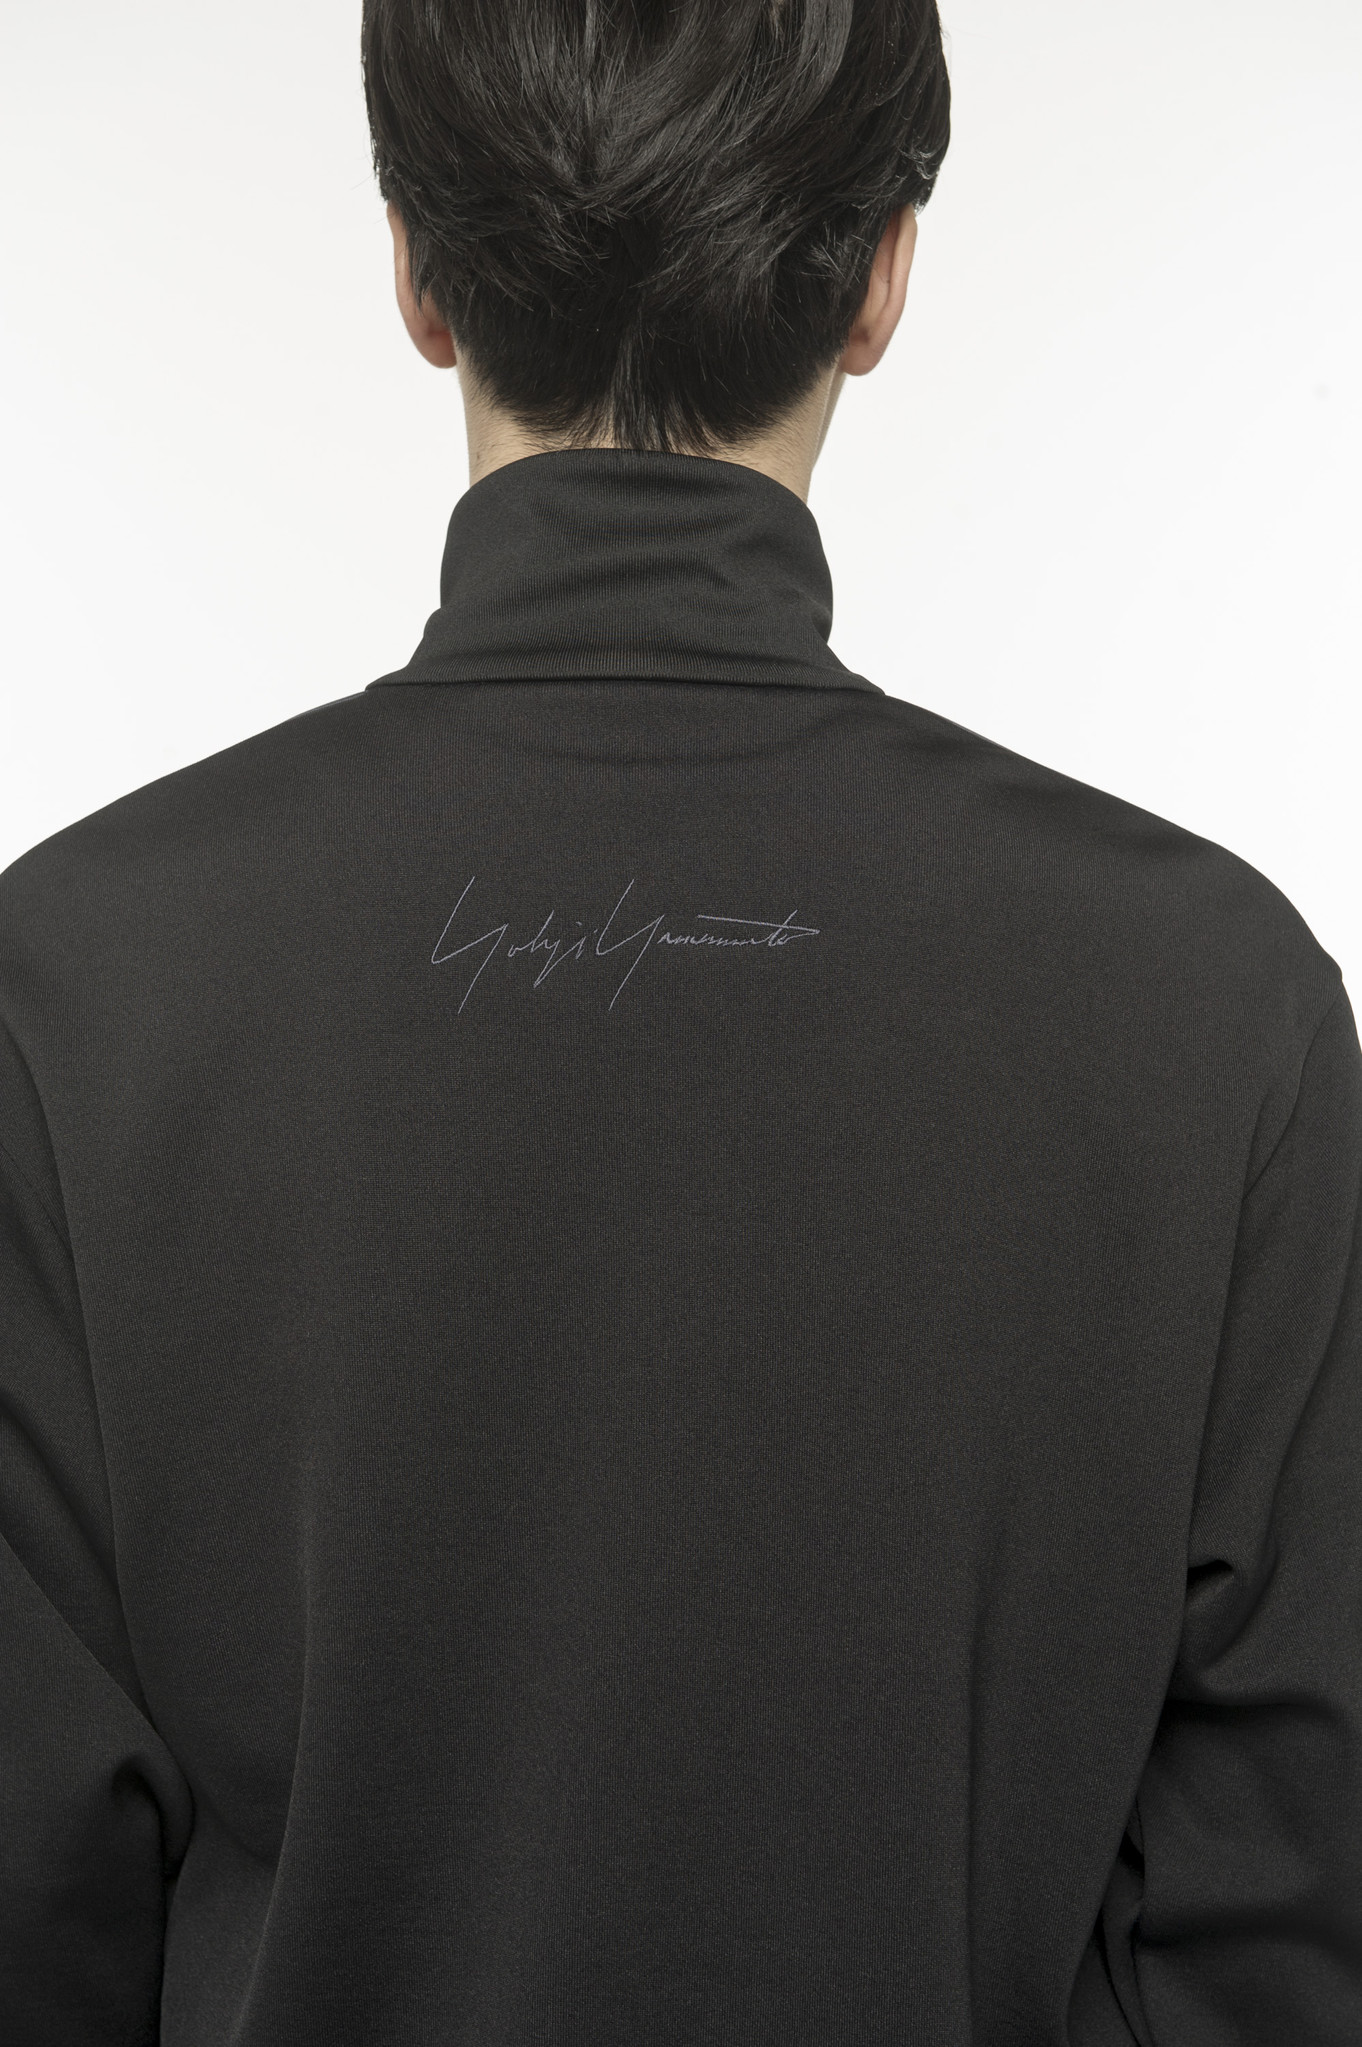 Yohji Yamamoto x adidas ”YY Exclusive Capsule Collection” 「SST 